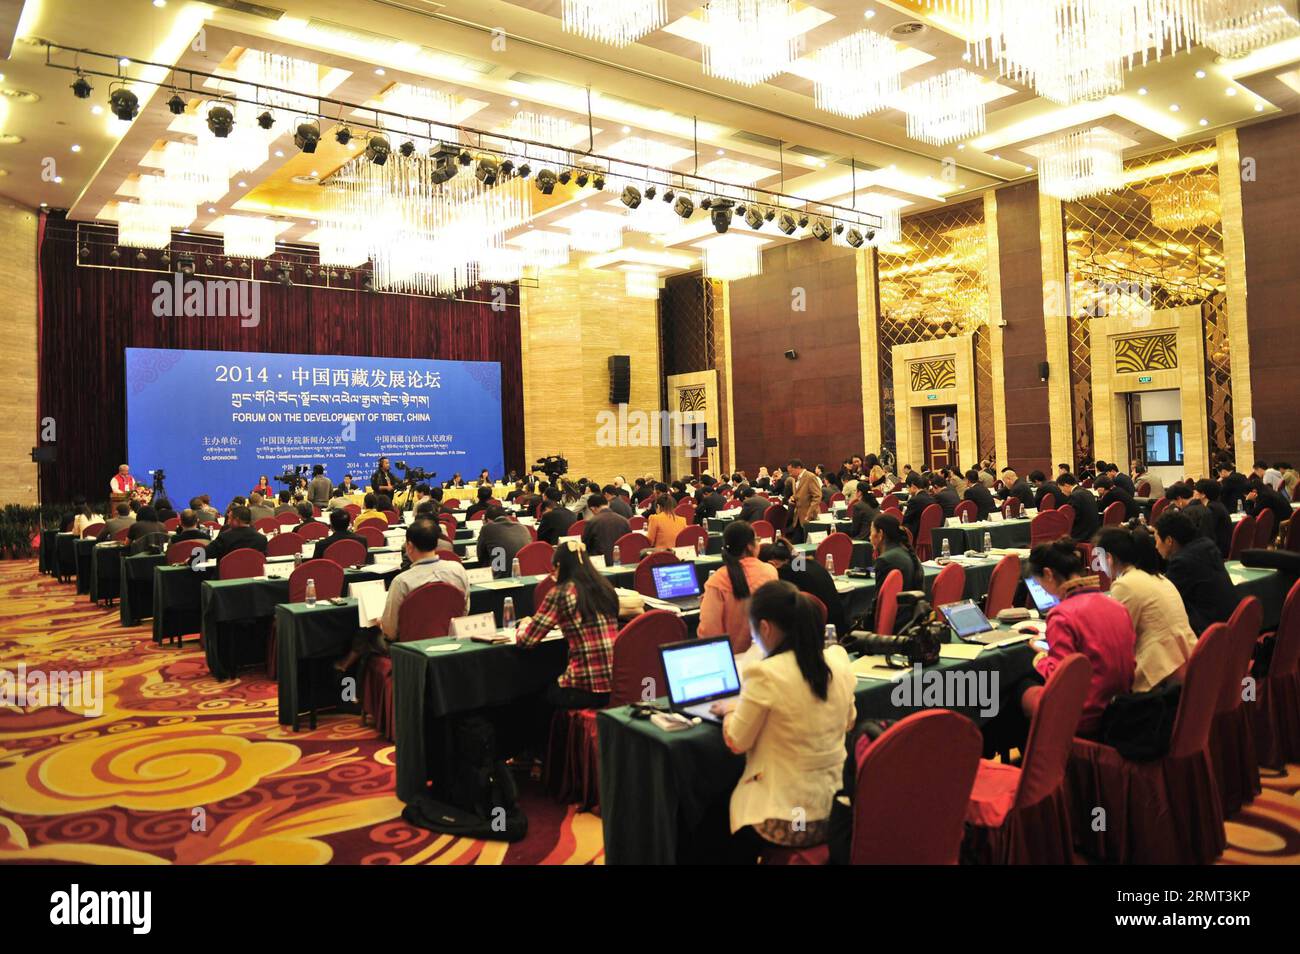 (140813) -- LHASA, 13 agosto 2014 -- la sessione di chiusura del Forum sullo sviluppo del Tibet si tiene a Lhasa, capitale della regione autonoma del Tibet nel sud-ovest della Cina, 13 agosto 2014. Circa 100 delegati provenienti da 33 paesi e regioni, tra cui Cina, Gran Bretagna, India e Stati Uniti, hanno raccolto esperienze collettive per discutere le strategie di sviluppo per la regione durante il forum di due giorni. ) (Wjq) CHINA-LHASA-DEVELOPMENT FORUM-CLOSING (CN) LiuxKun PUBLICATIONxNOTxINxCHN Lhasa 13 agosto 2014 la sessione DI CHIUSURA del Forum SULLO sviluppo del Tibet È eroe a Lhasa capitale della Cina sud-occidentale Foto Stock